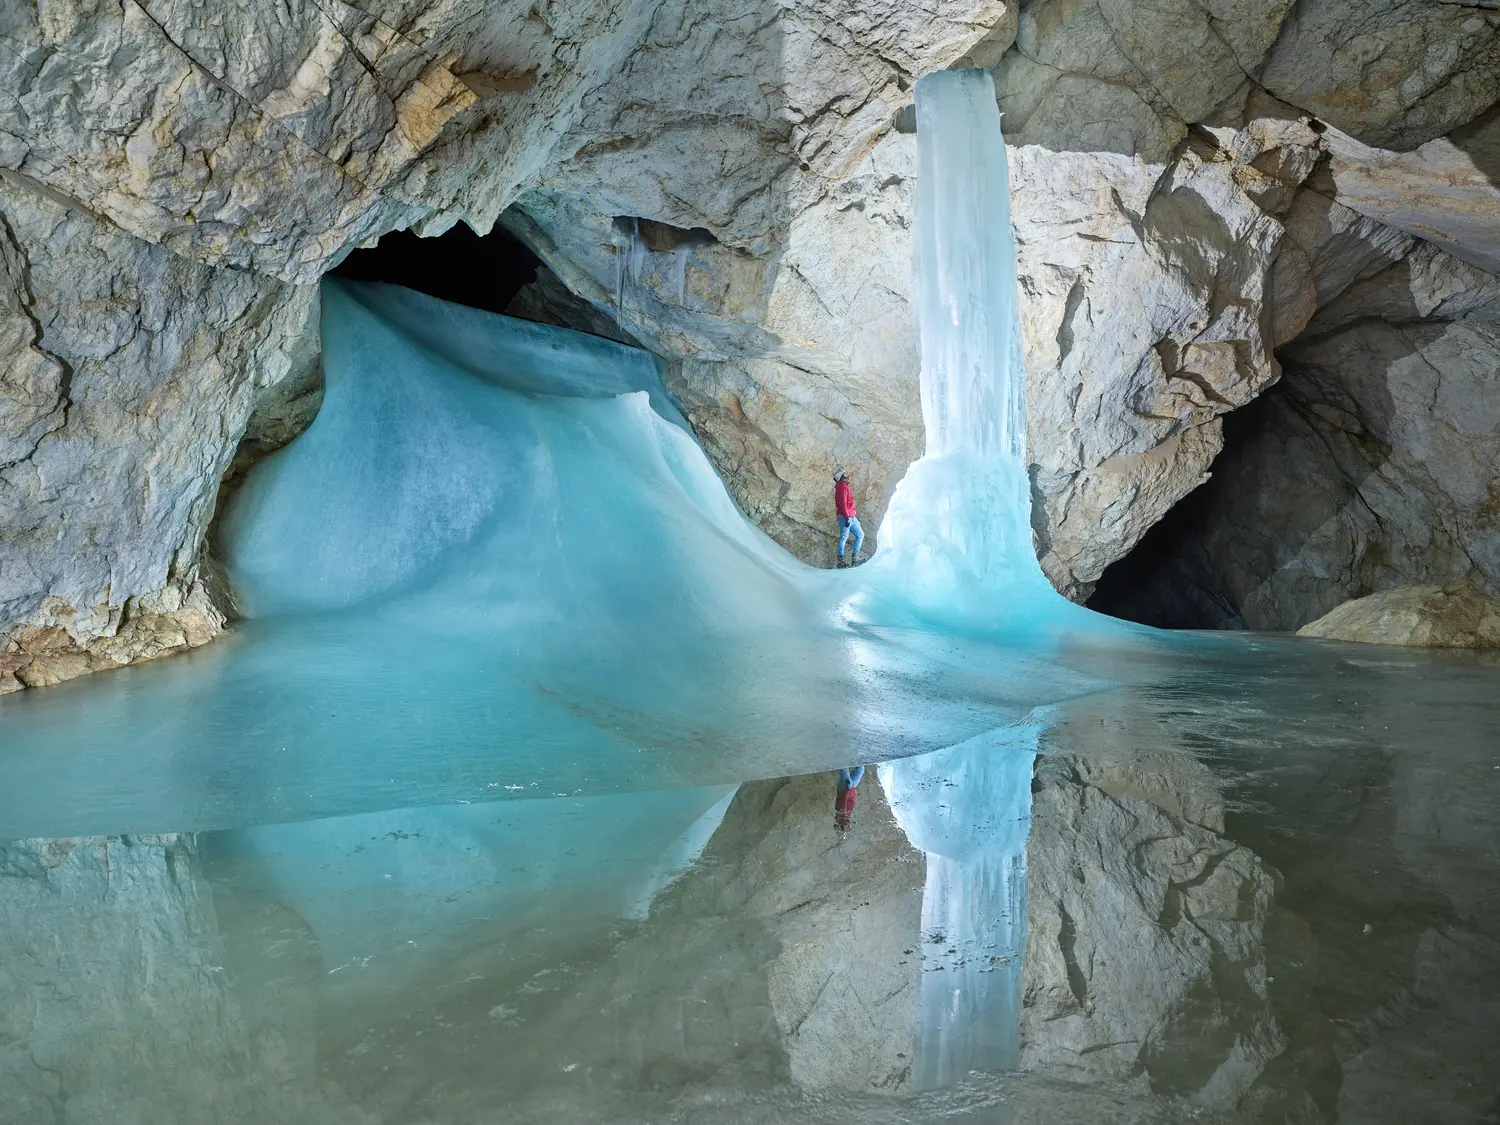 Eisriesenwelt ice cave in Werfen, Austria